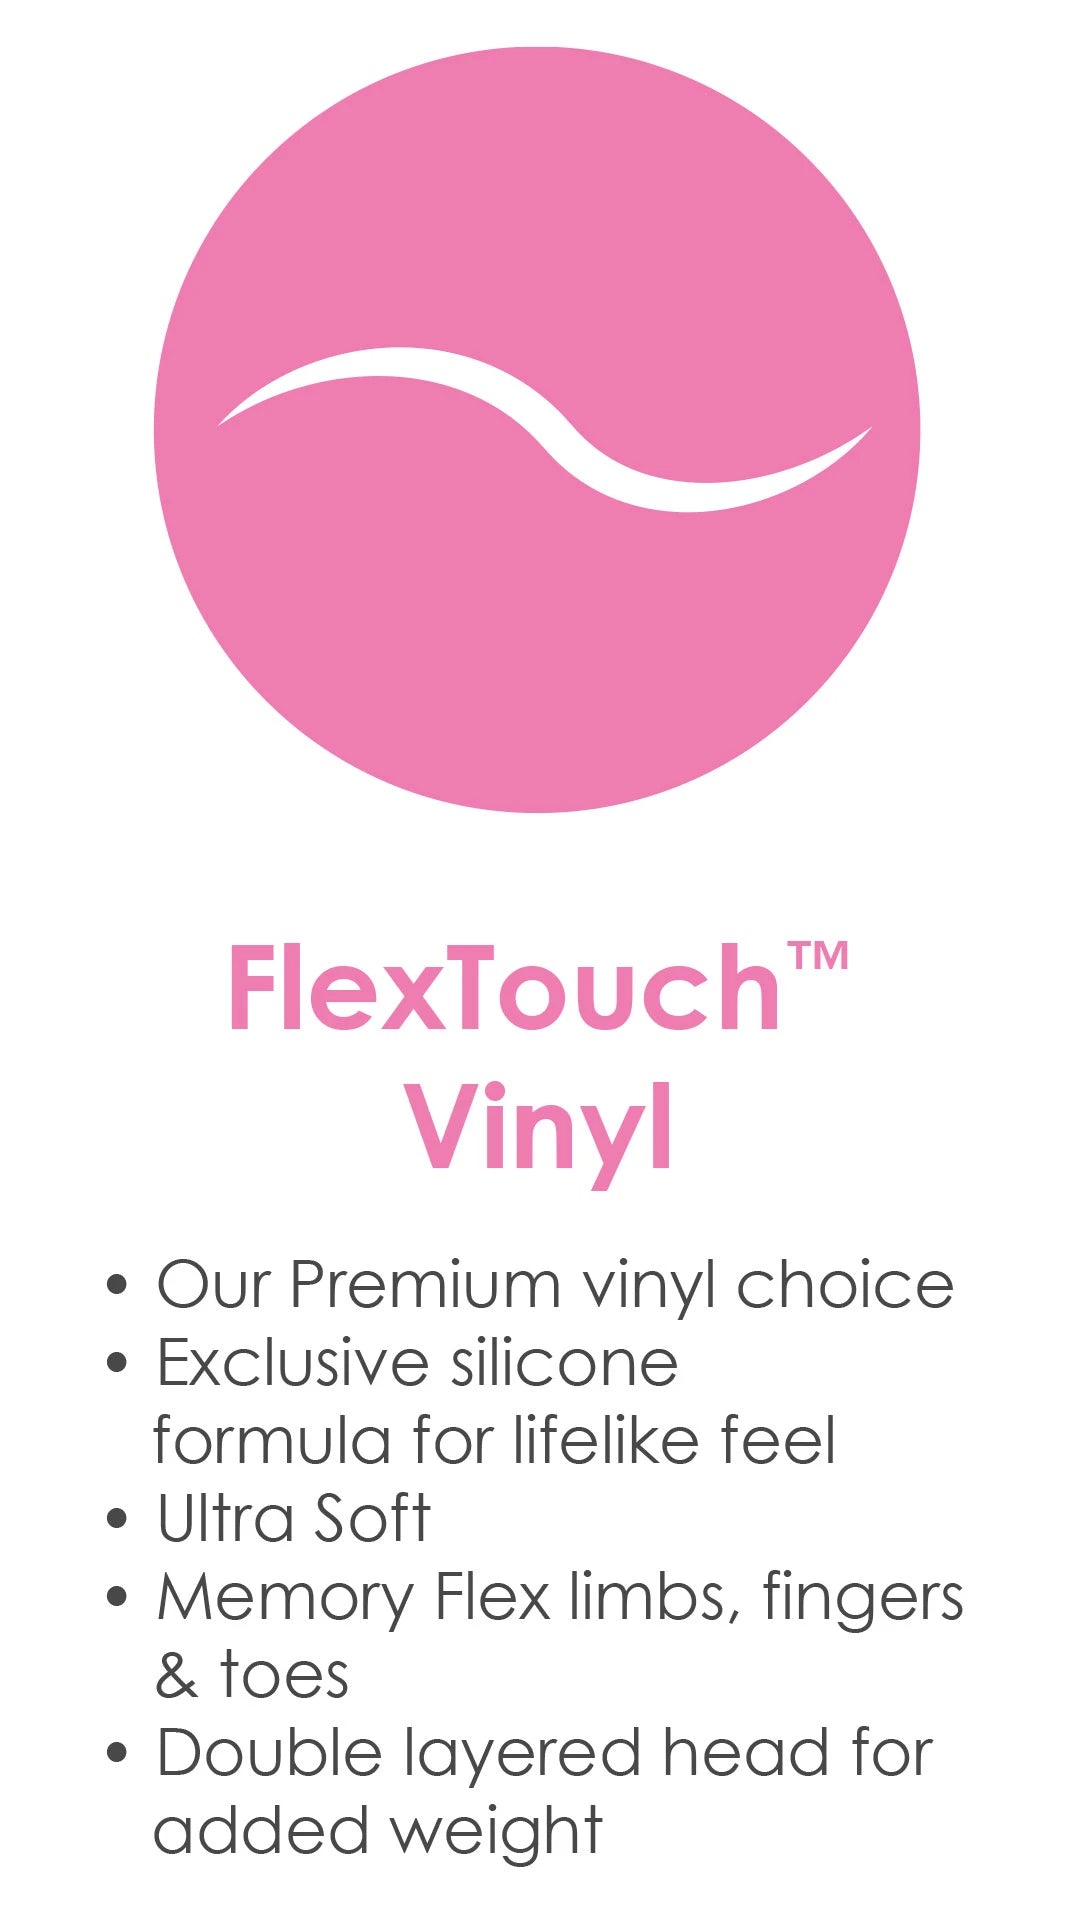 Flextouch Vinyl